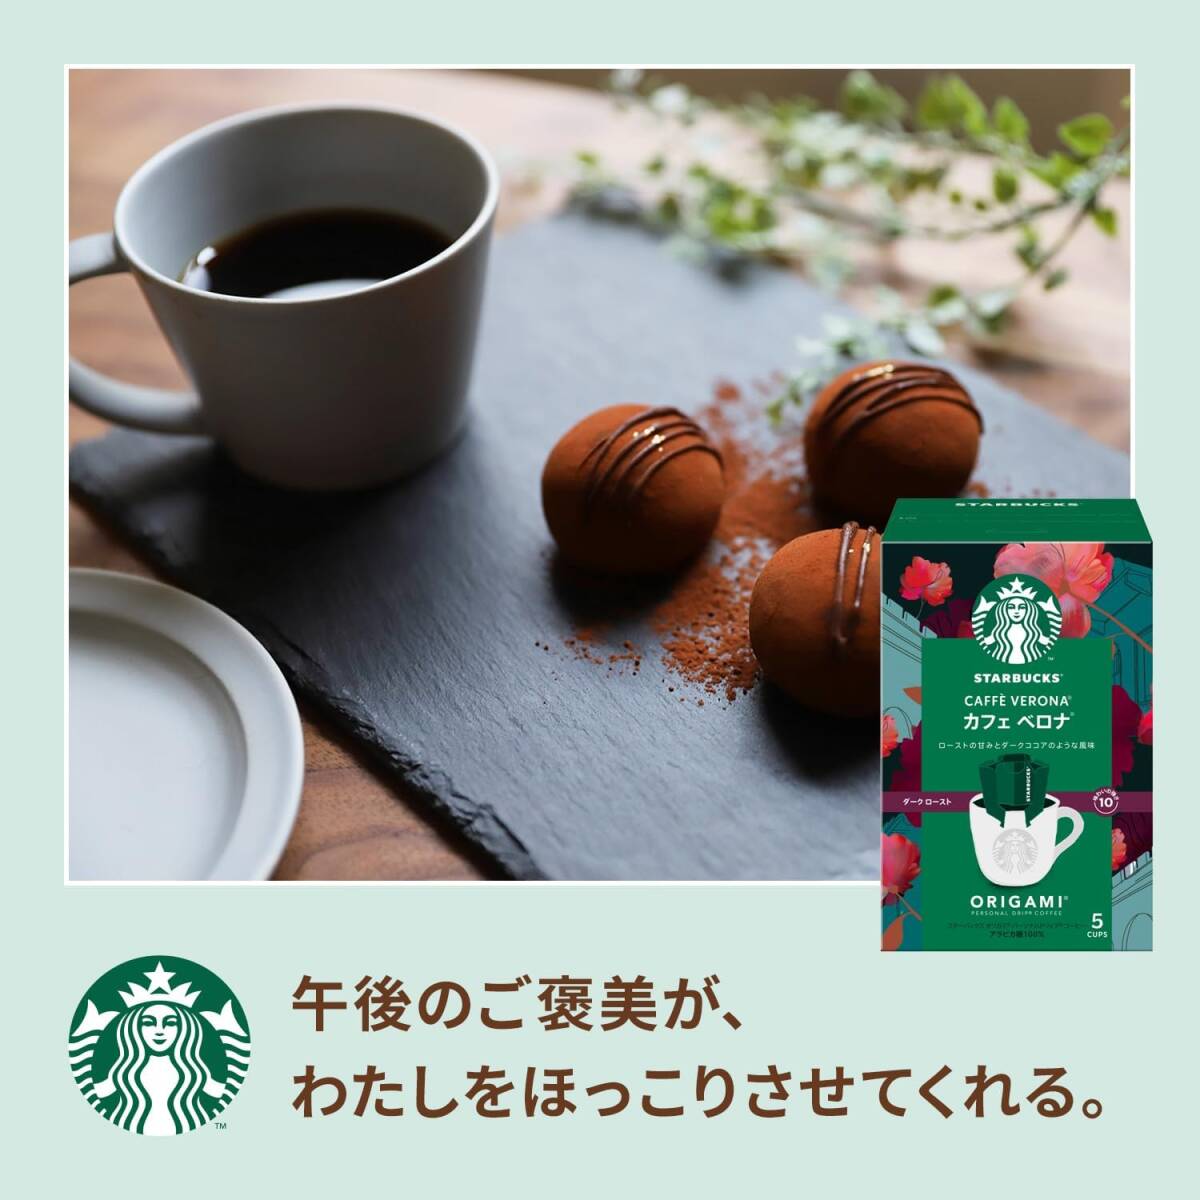 スターバックス オリガミ パーソナルドリップコーヒー カフェ ベロナ 5袋×2箱【 レギュラー コーヒー 】の画像3